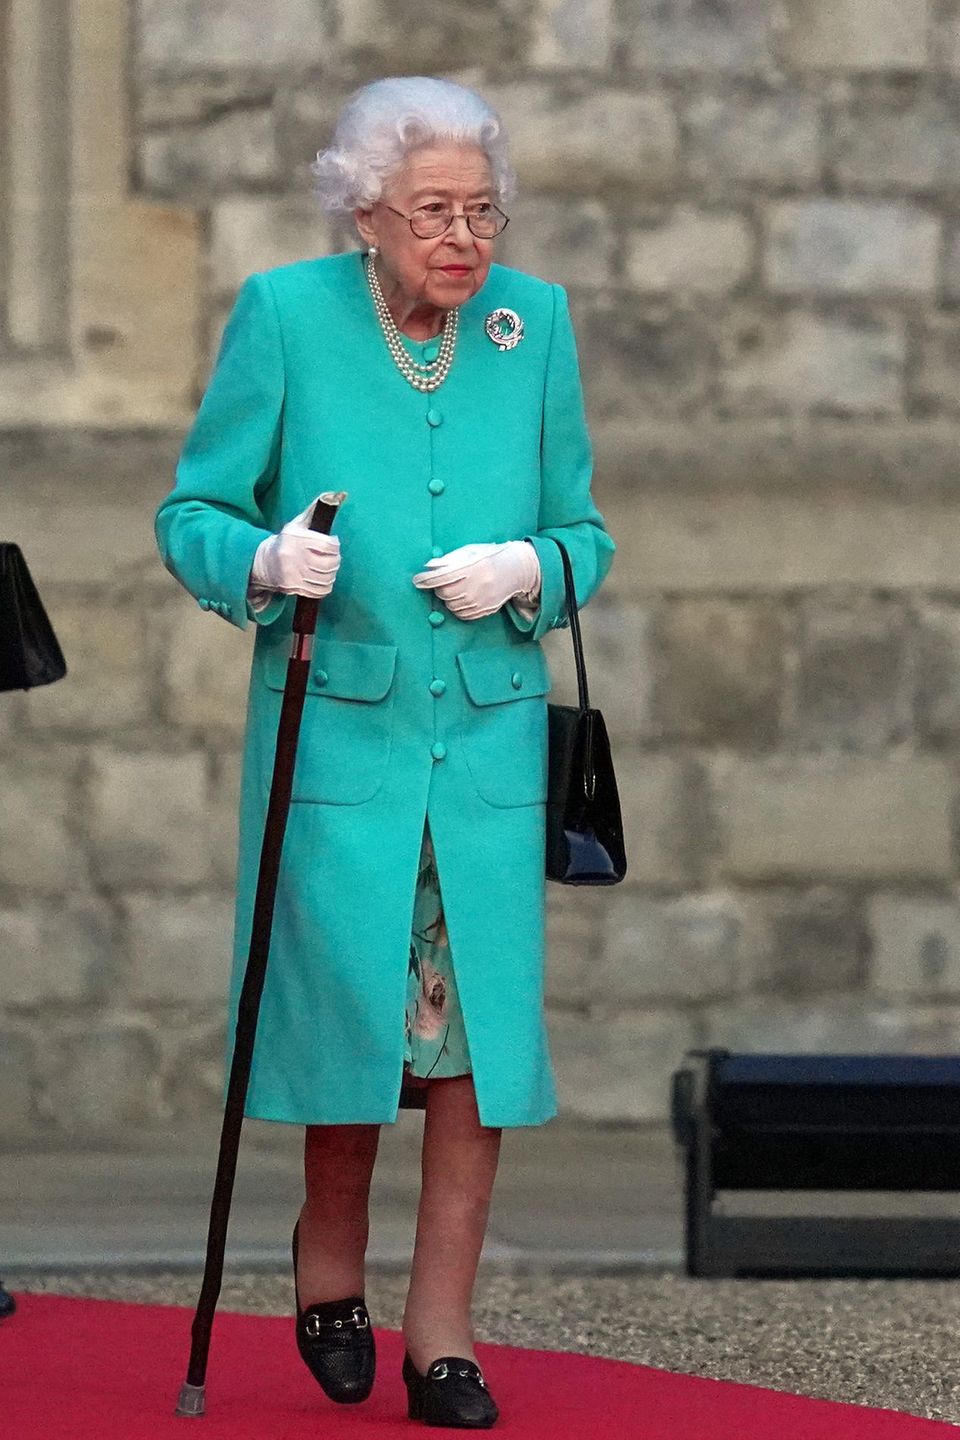 70. Thronjubiläum: Queen Elizabeth II.